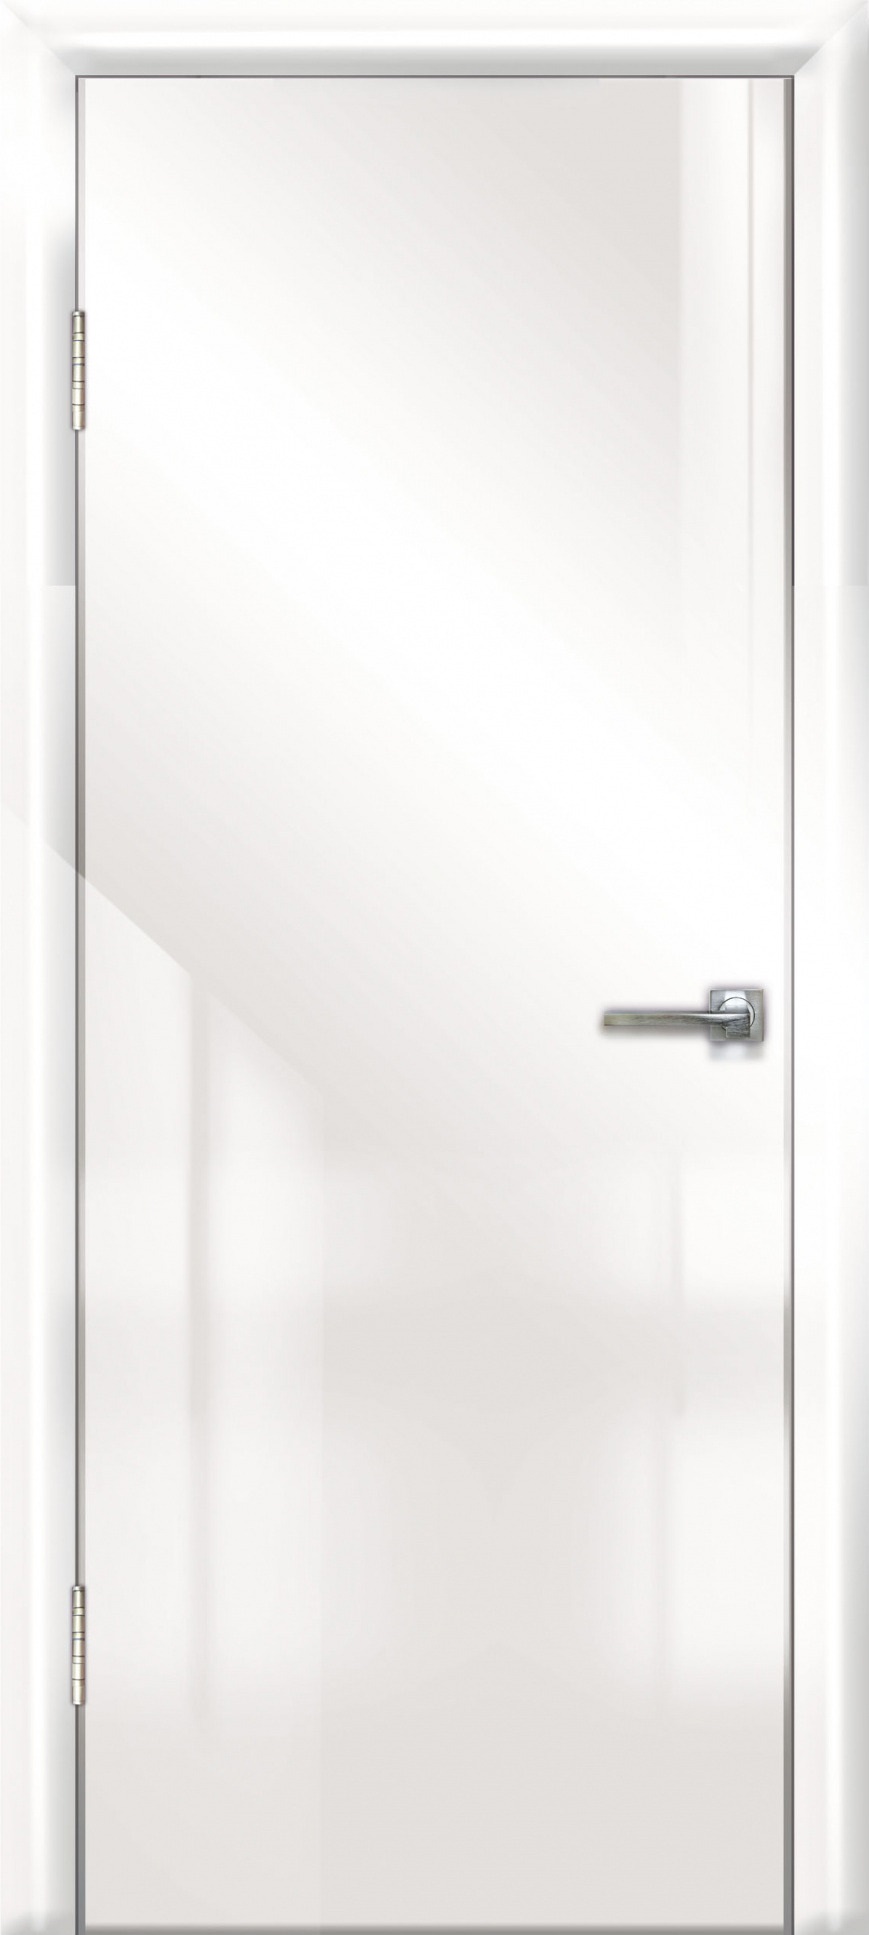 фото Дверь межкомнатная дверная линия дг-500 900х2000 мм белый глянец/белая 21-10 пвх